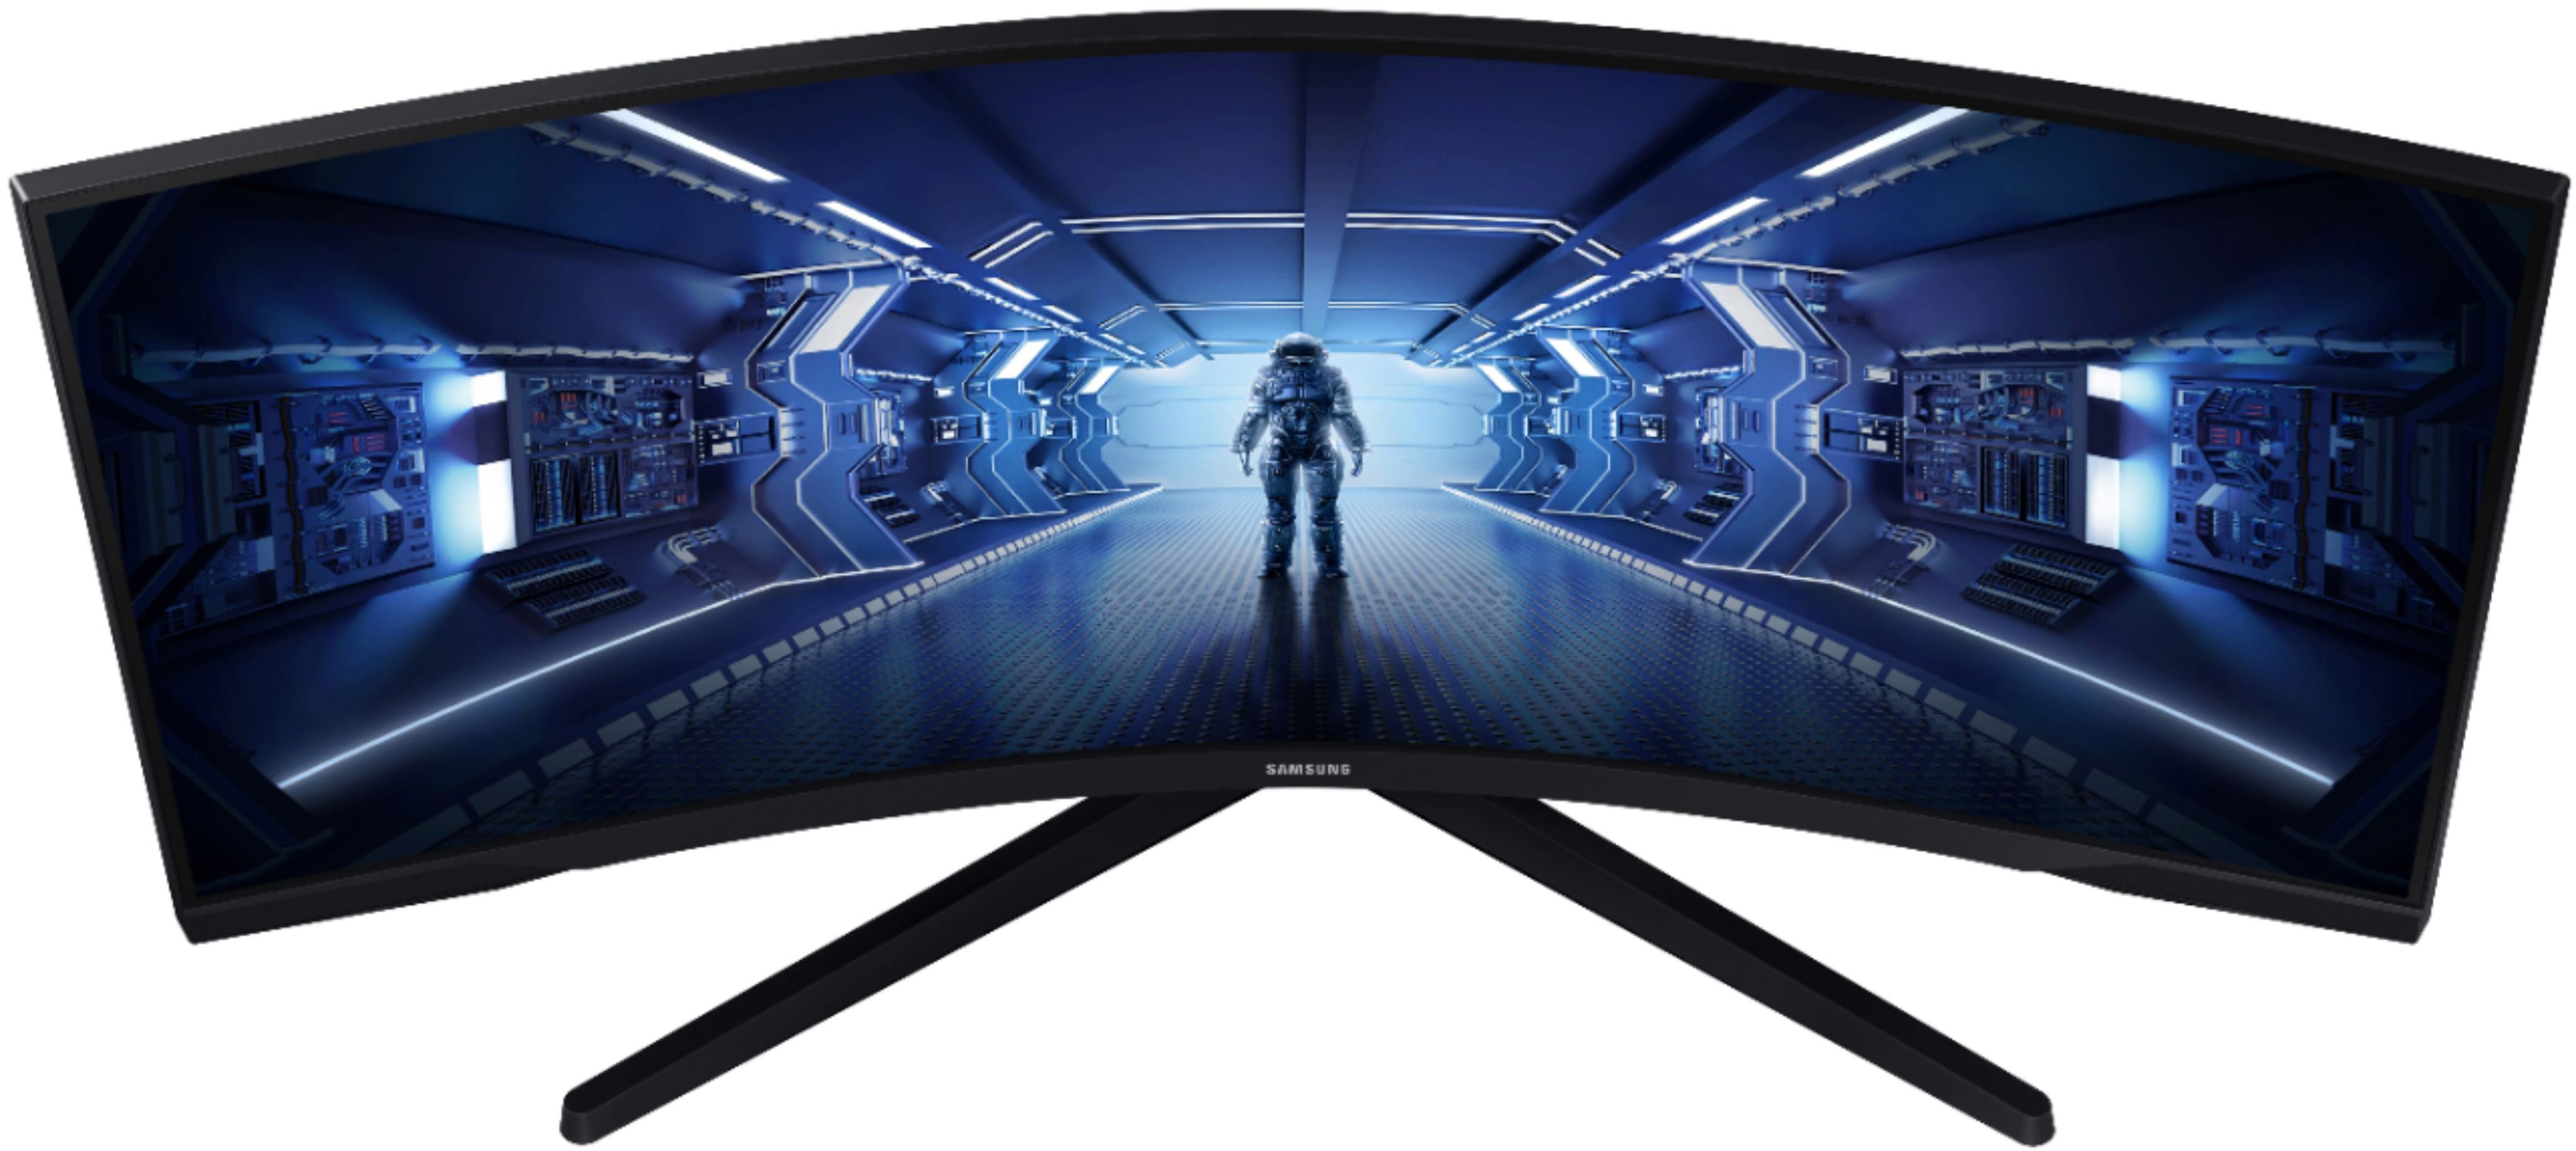 Samsung 34” Odyssey G5 1000R Curved 1ms 165Hz QHD FreeSync Prem Gaming  Monitor Black LC34G55TWWNXZA - Best Buy